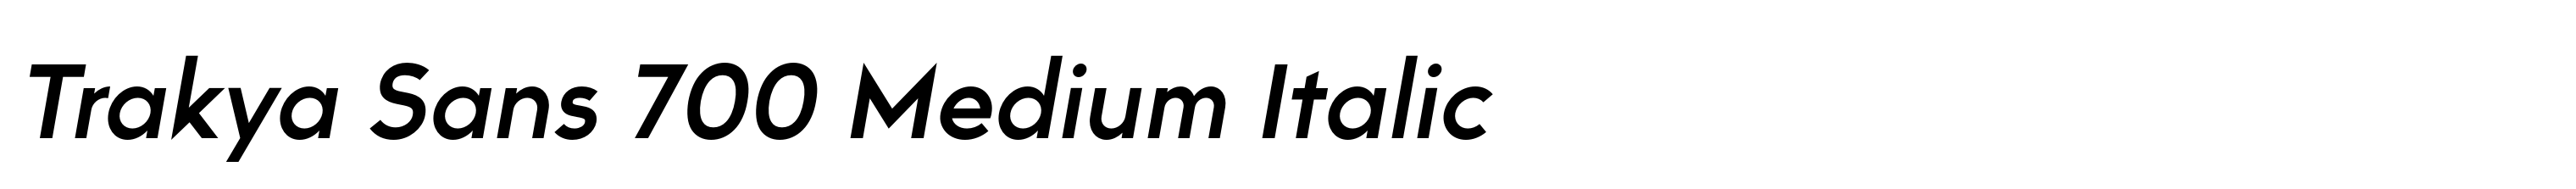 Trakya Sans 700 Medium Italic